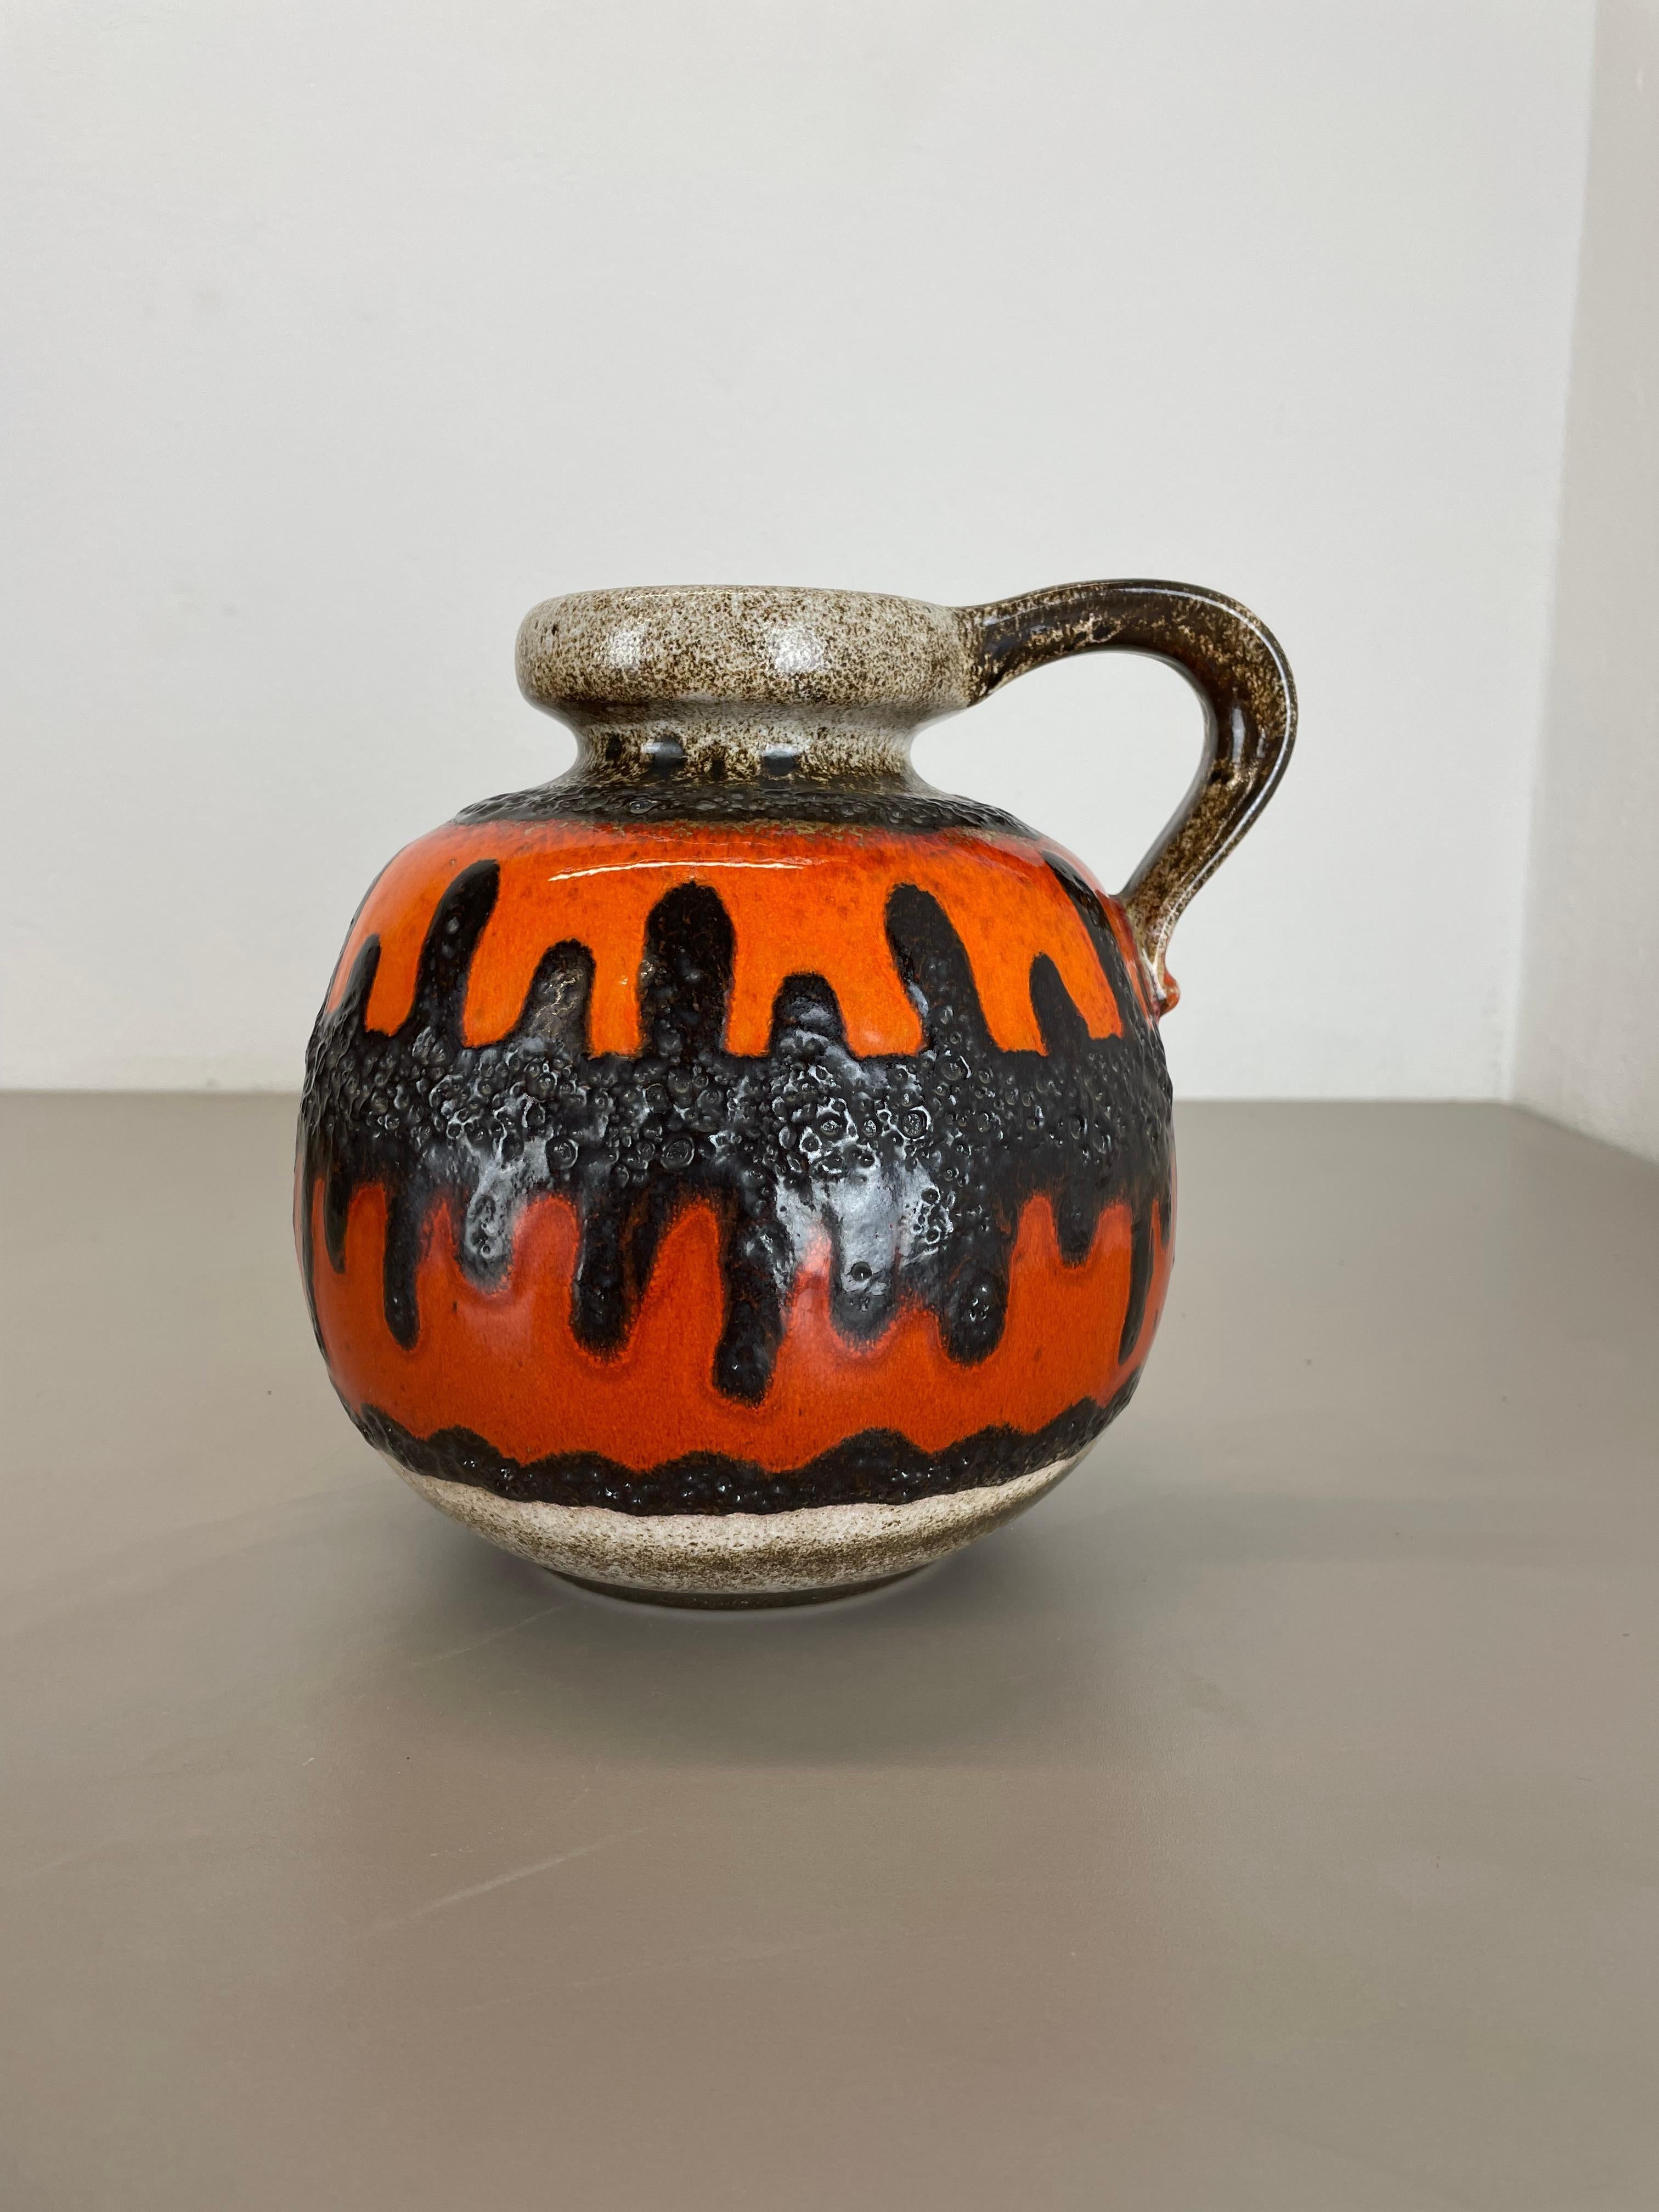 Article :

Vase d'art en lave grasse avec glaçure colorée rare


Producteur :

Scheurich, Allemagne



Décennie :

1970s




Ce vase vintage original a été produit dans les années 1970 en Allemagne. Il est réalisé en poterie céramique dans une